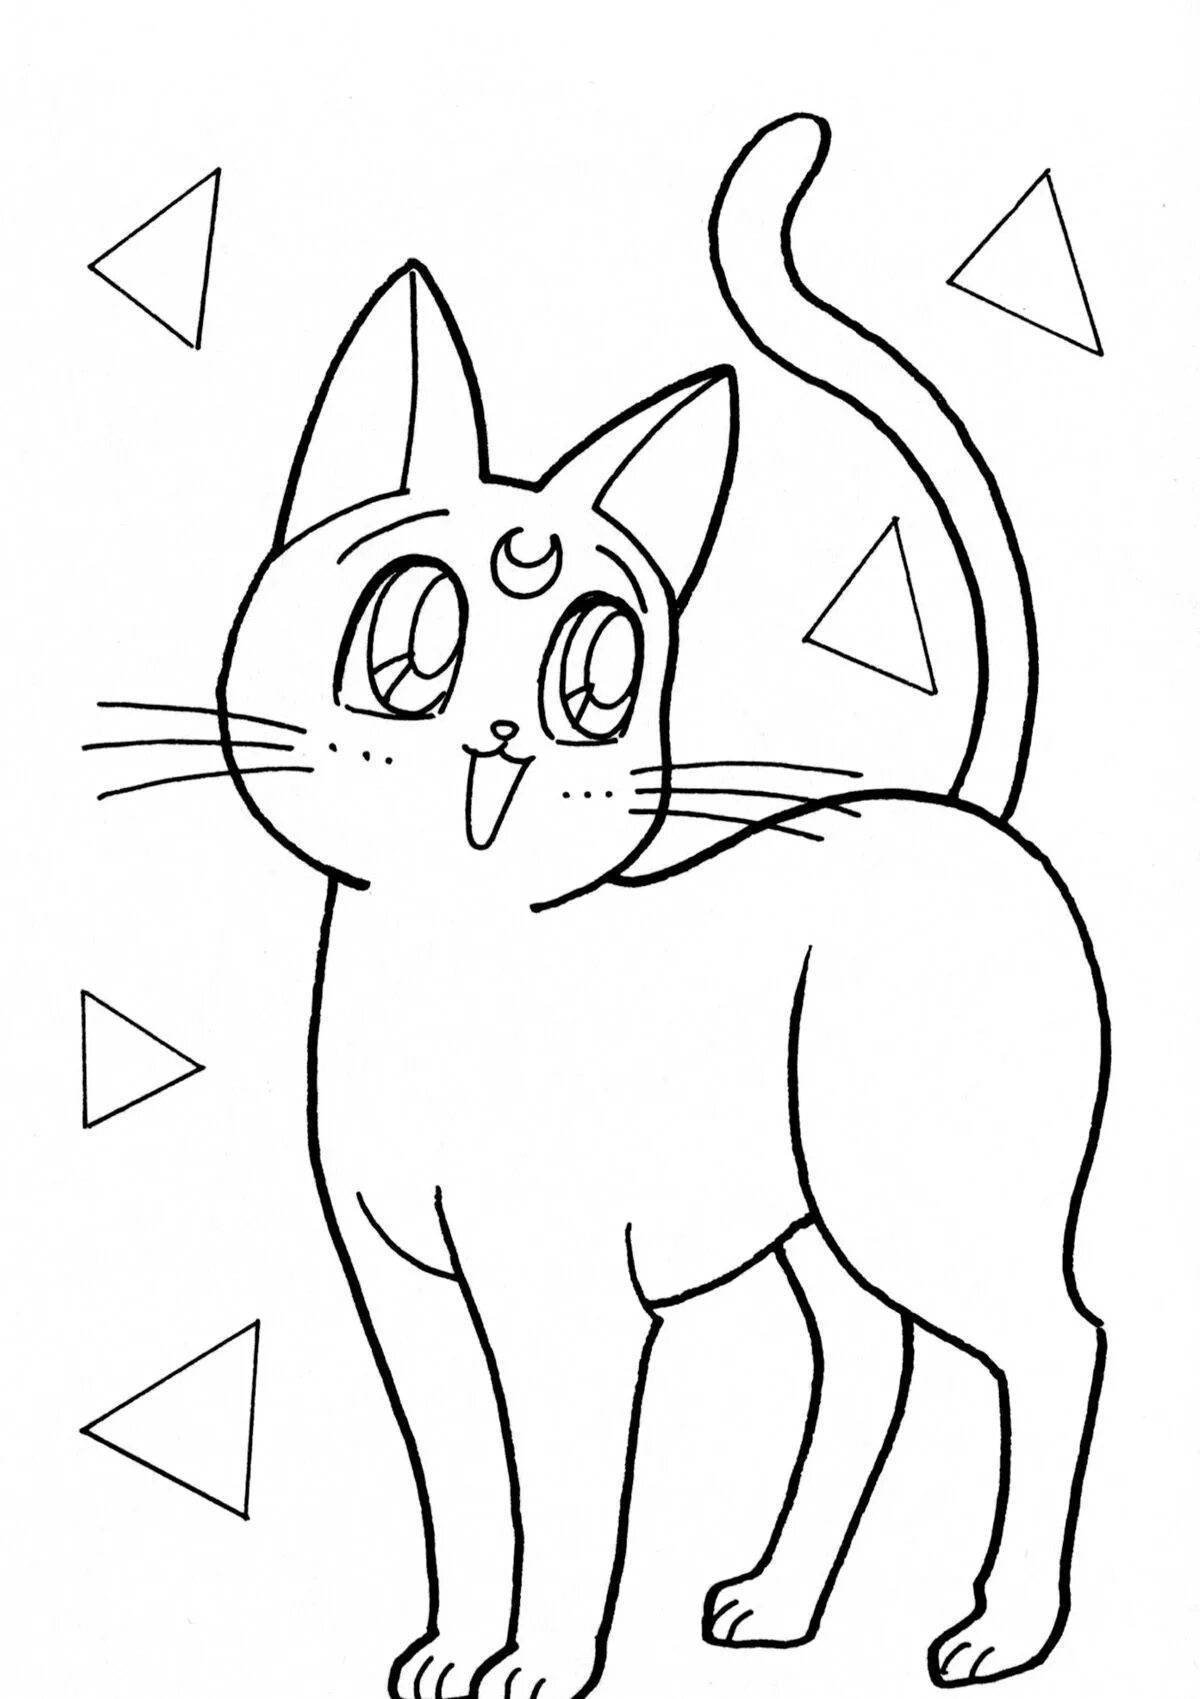 Страницы раскрашивания кошки аниме Изображения – скачать бесплатно на Freepik